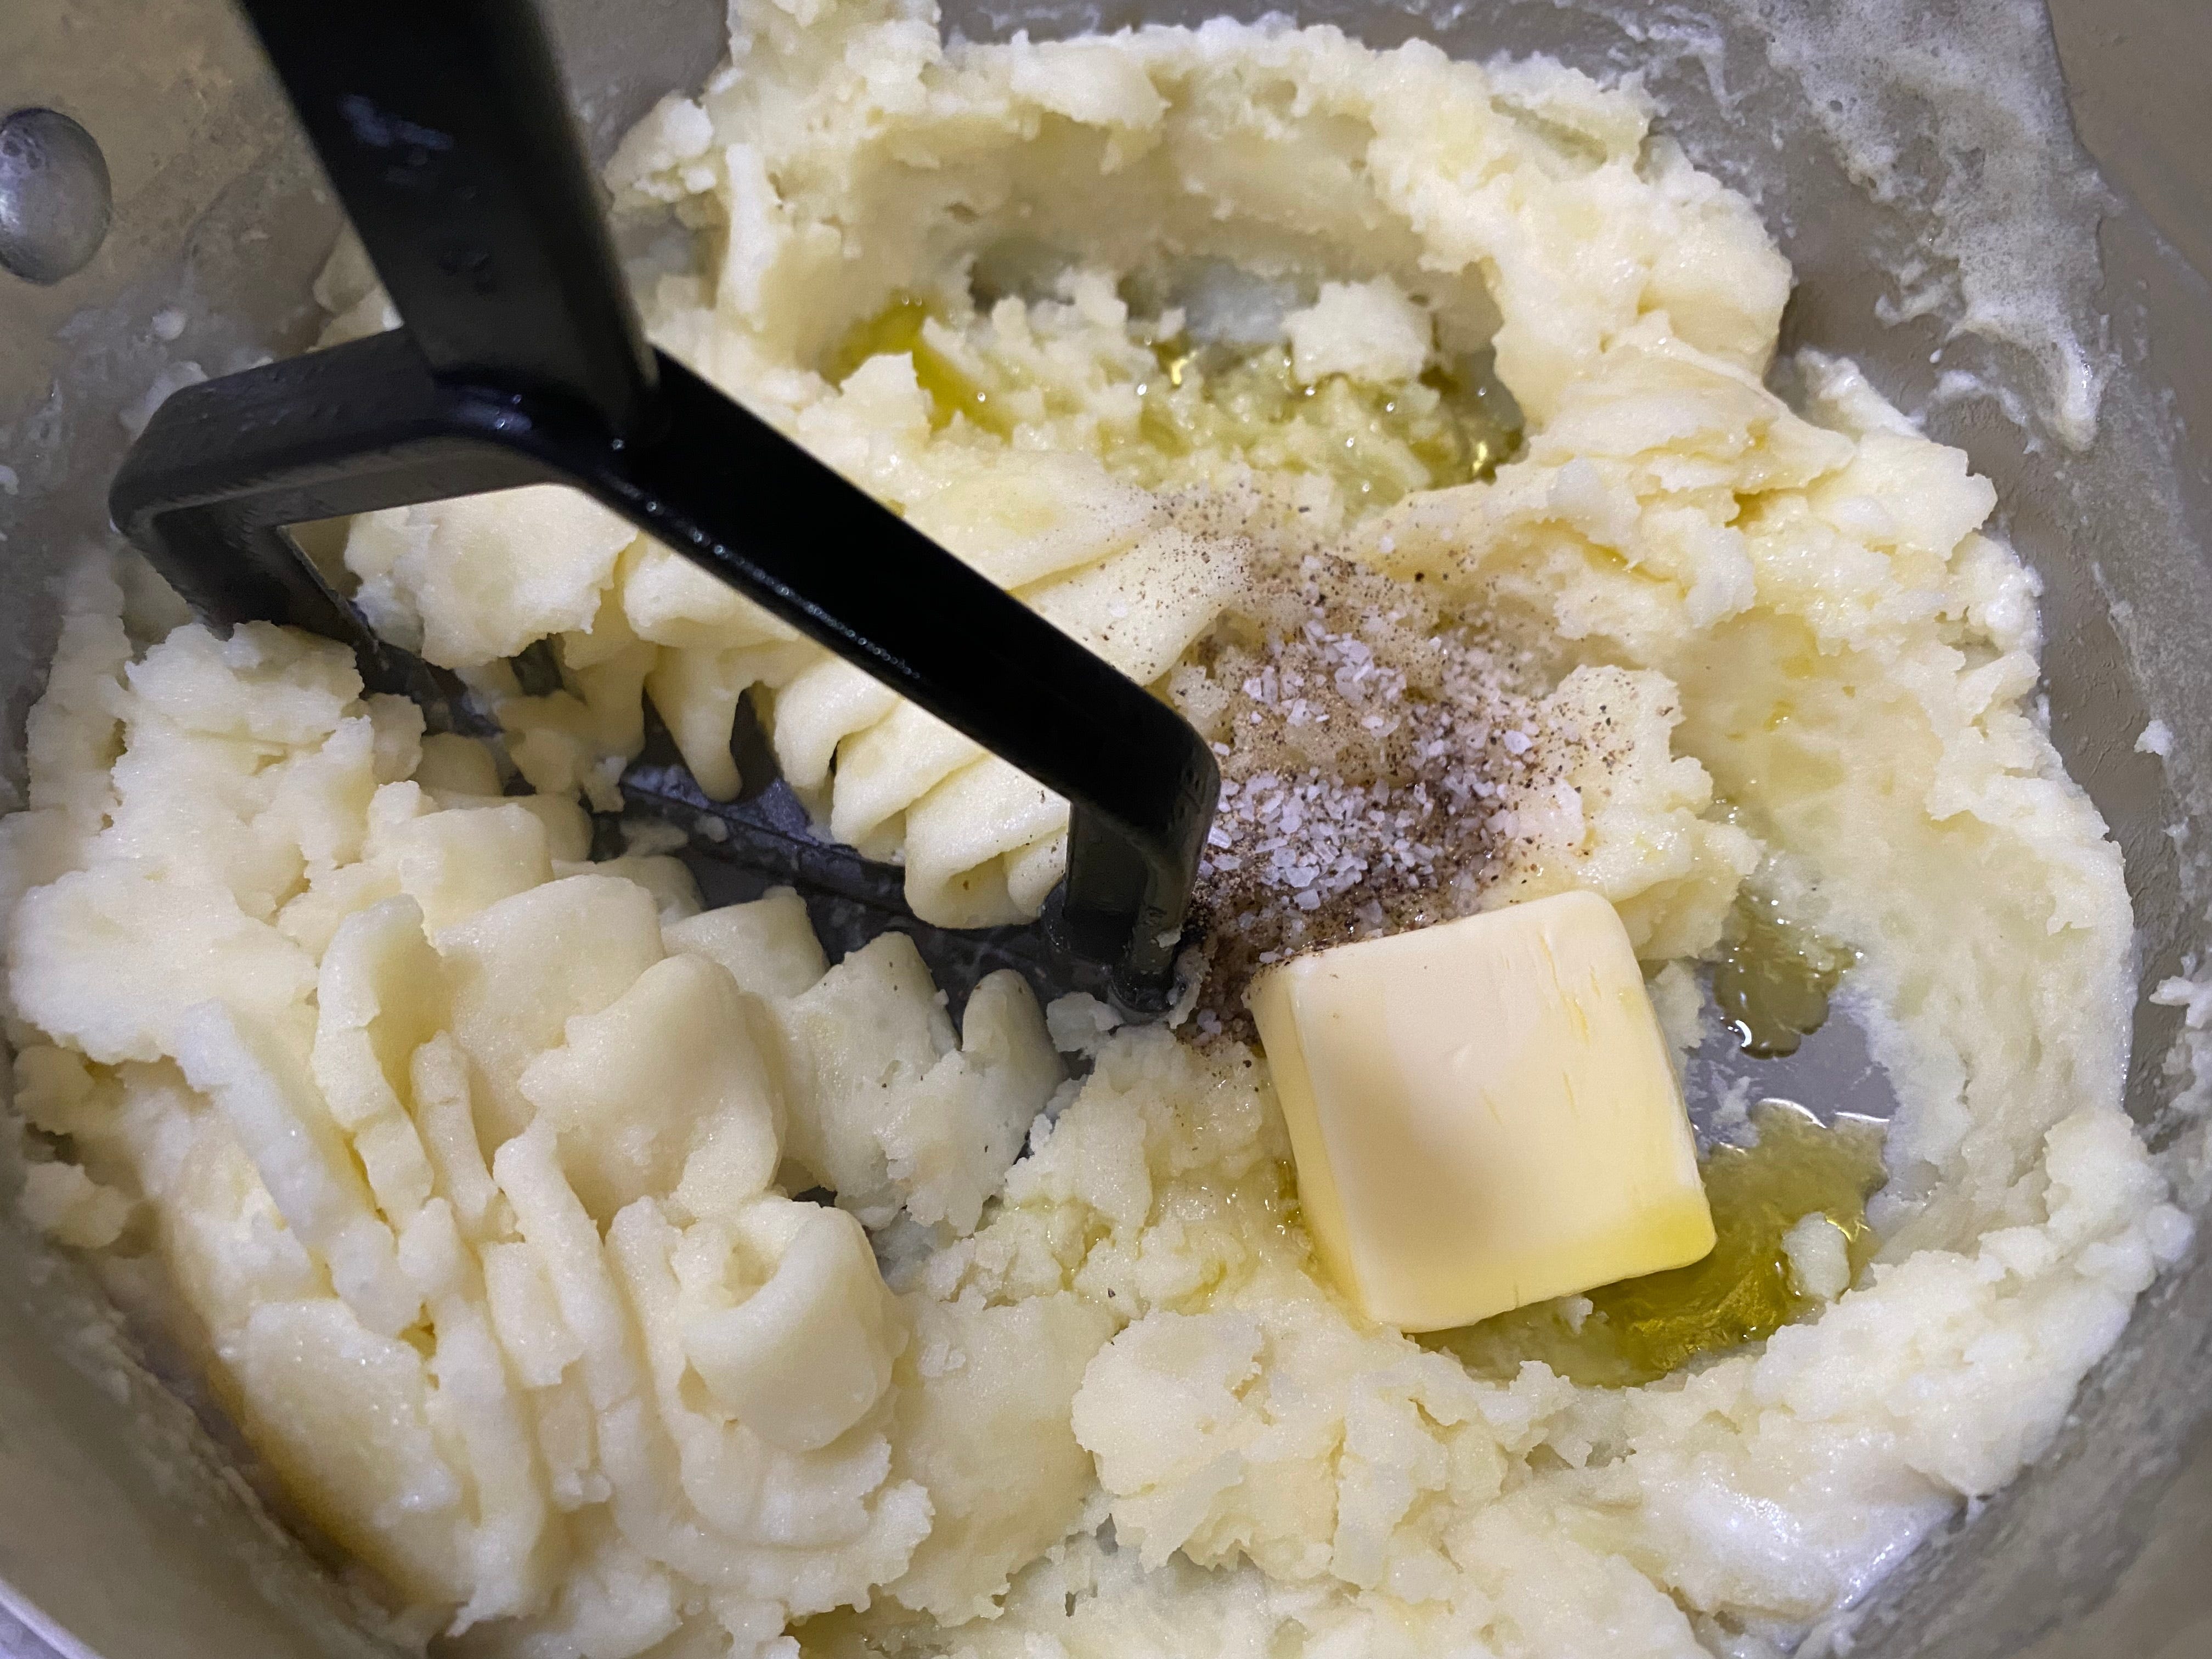 Die Kartoffeln werden in der Schüssel zerdrückt, während Gewürze, Olivenöl und Butter untergemischt werden.